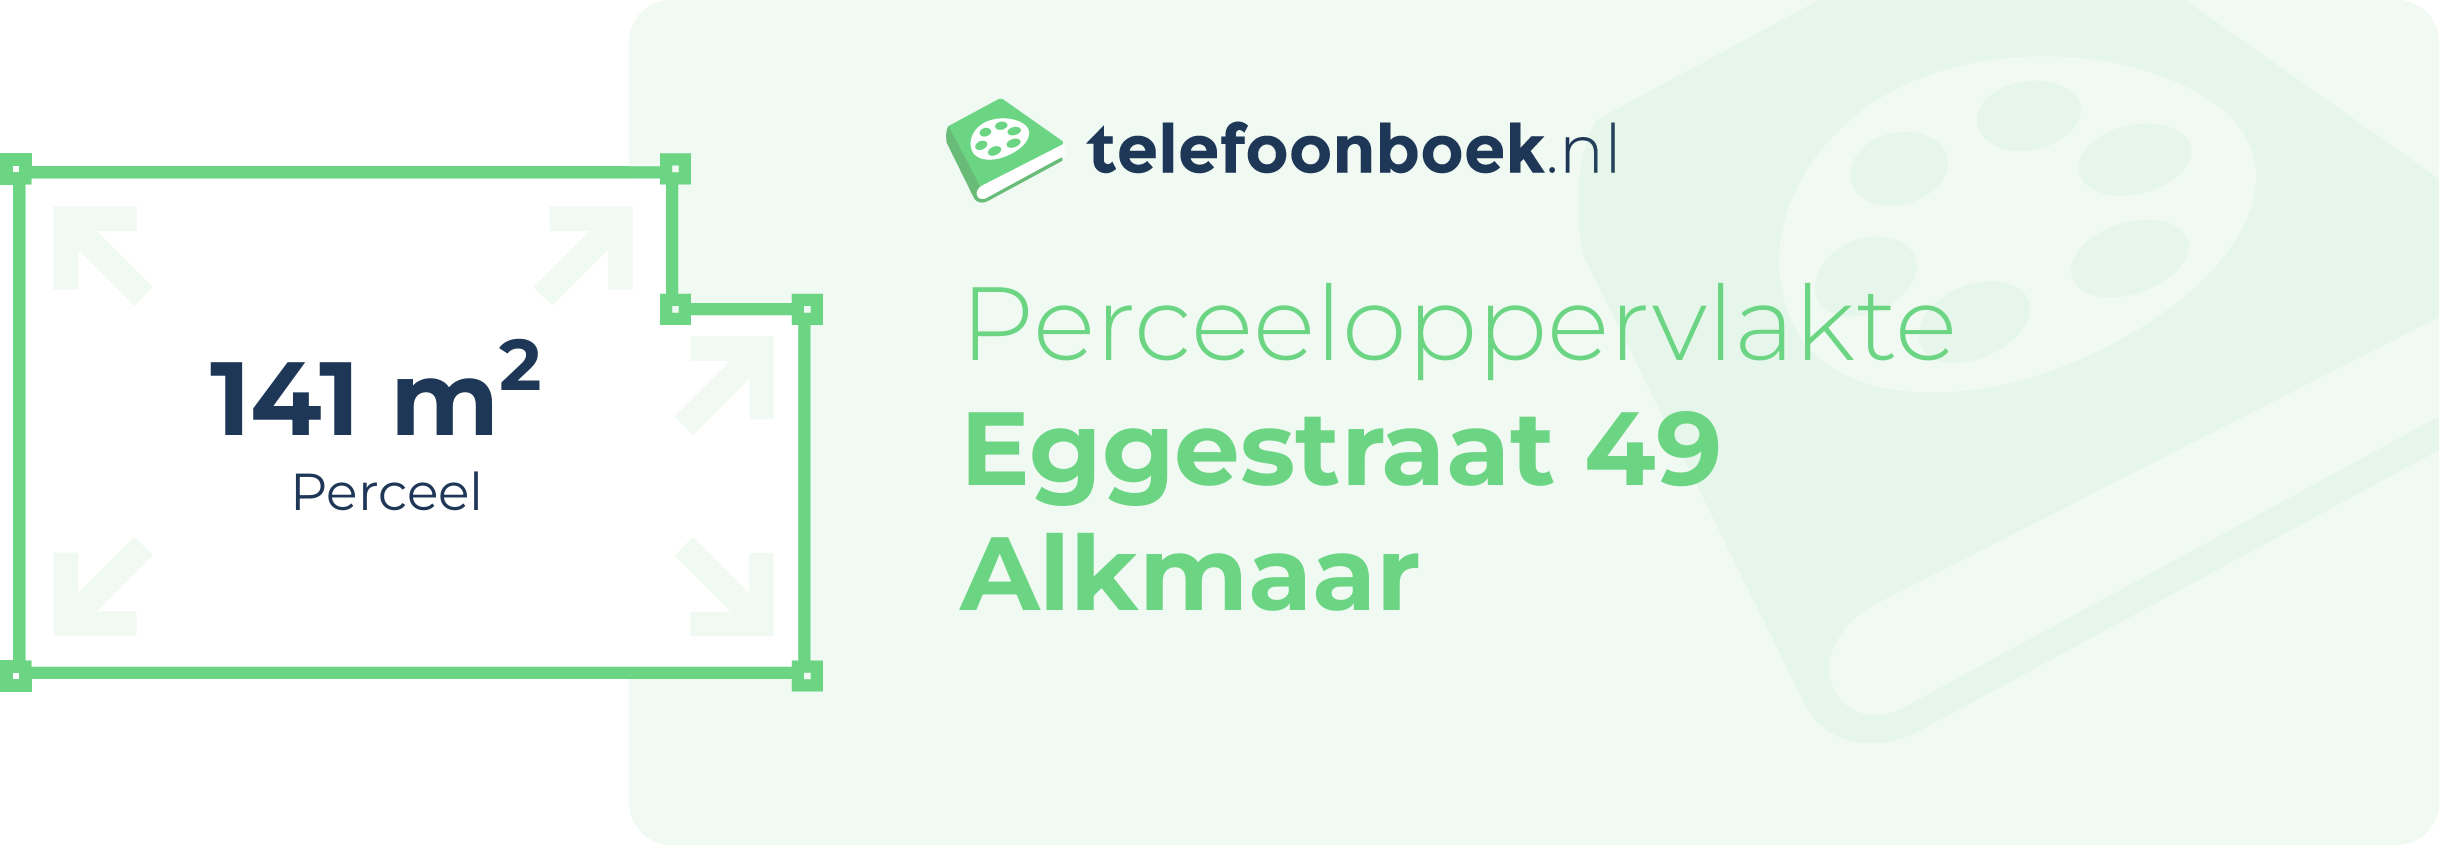 Perceeloppervlakte Eggestraat 49 Alkmaar